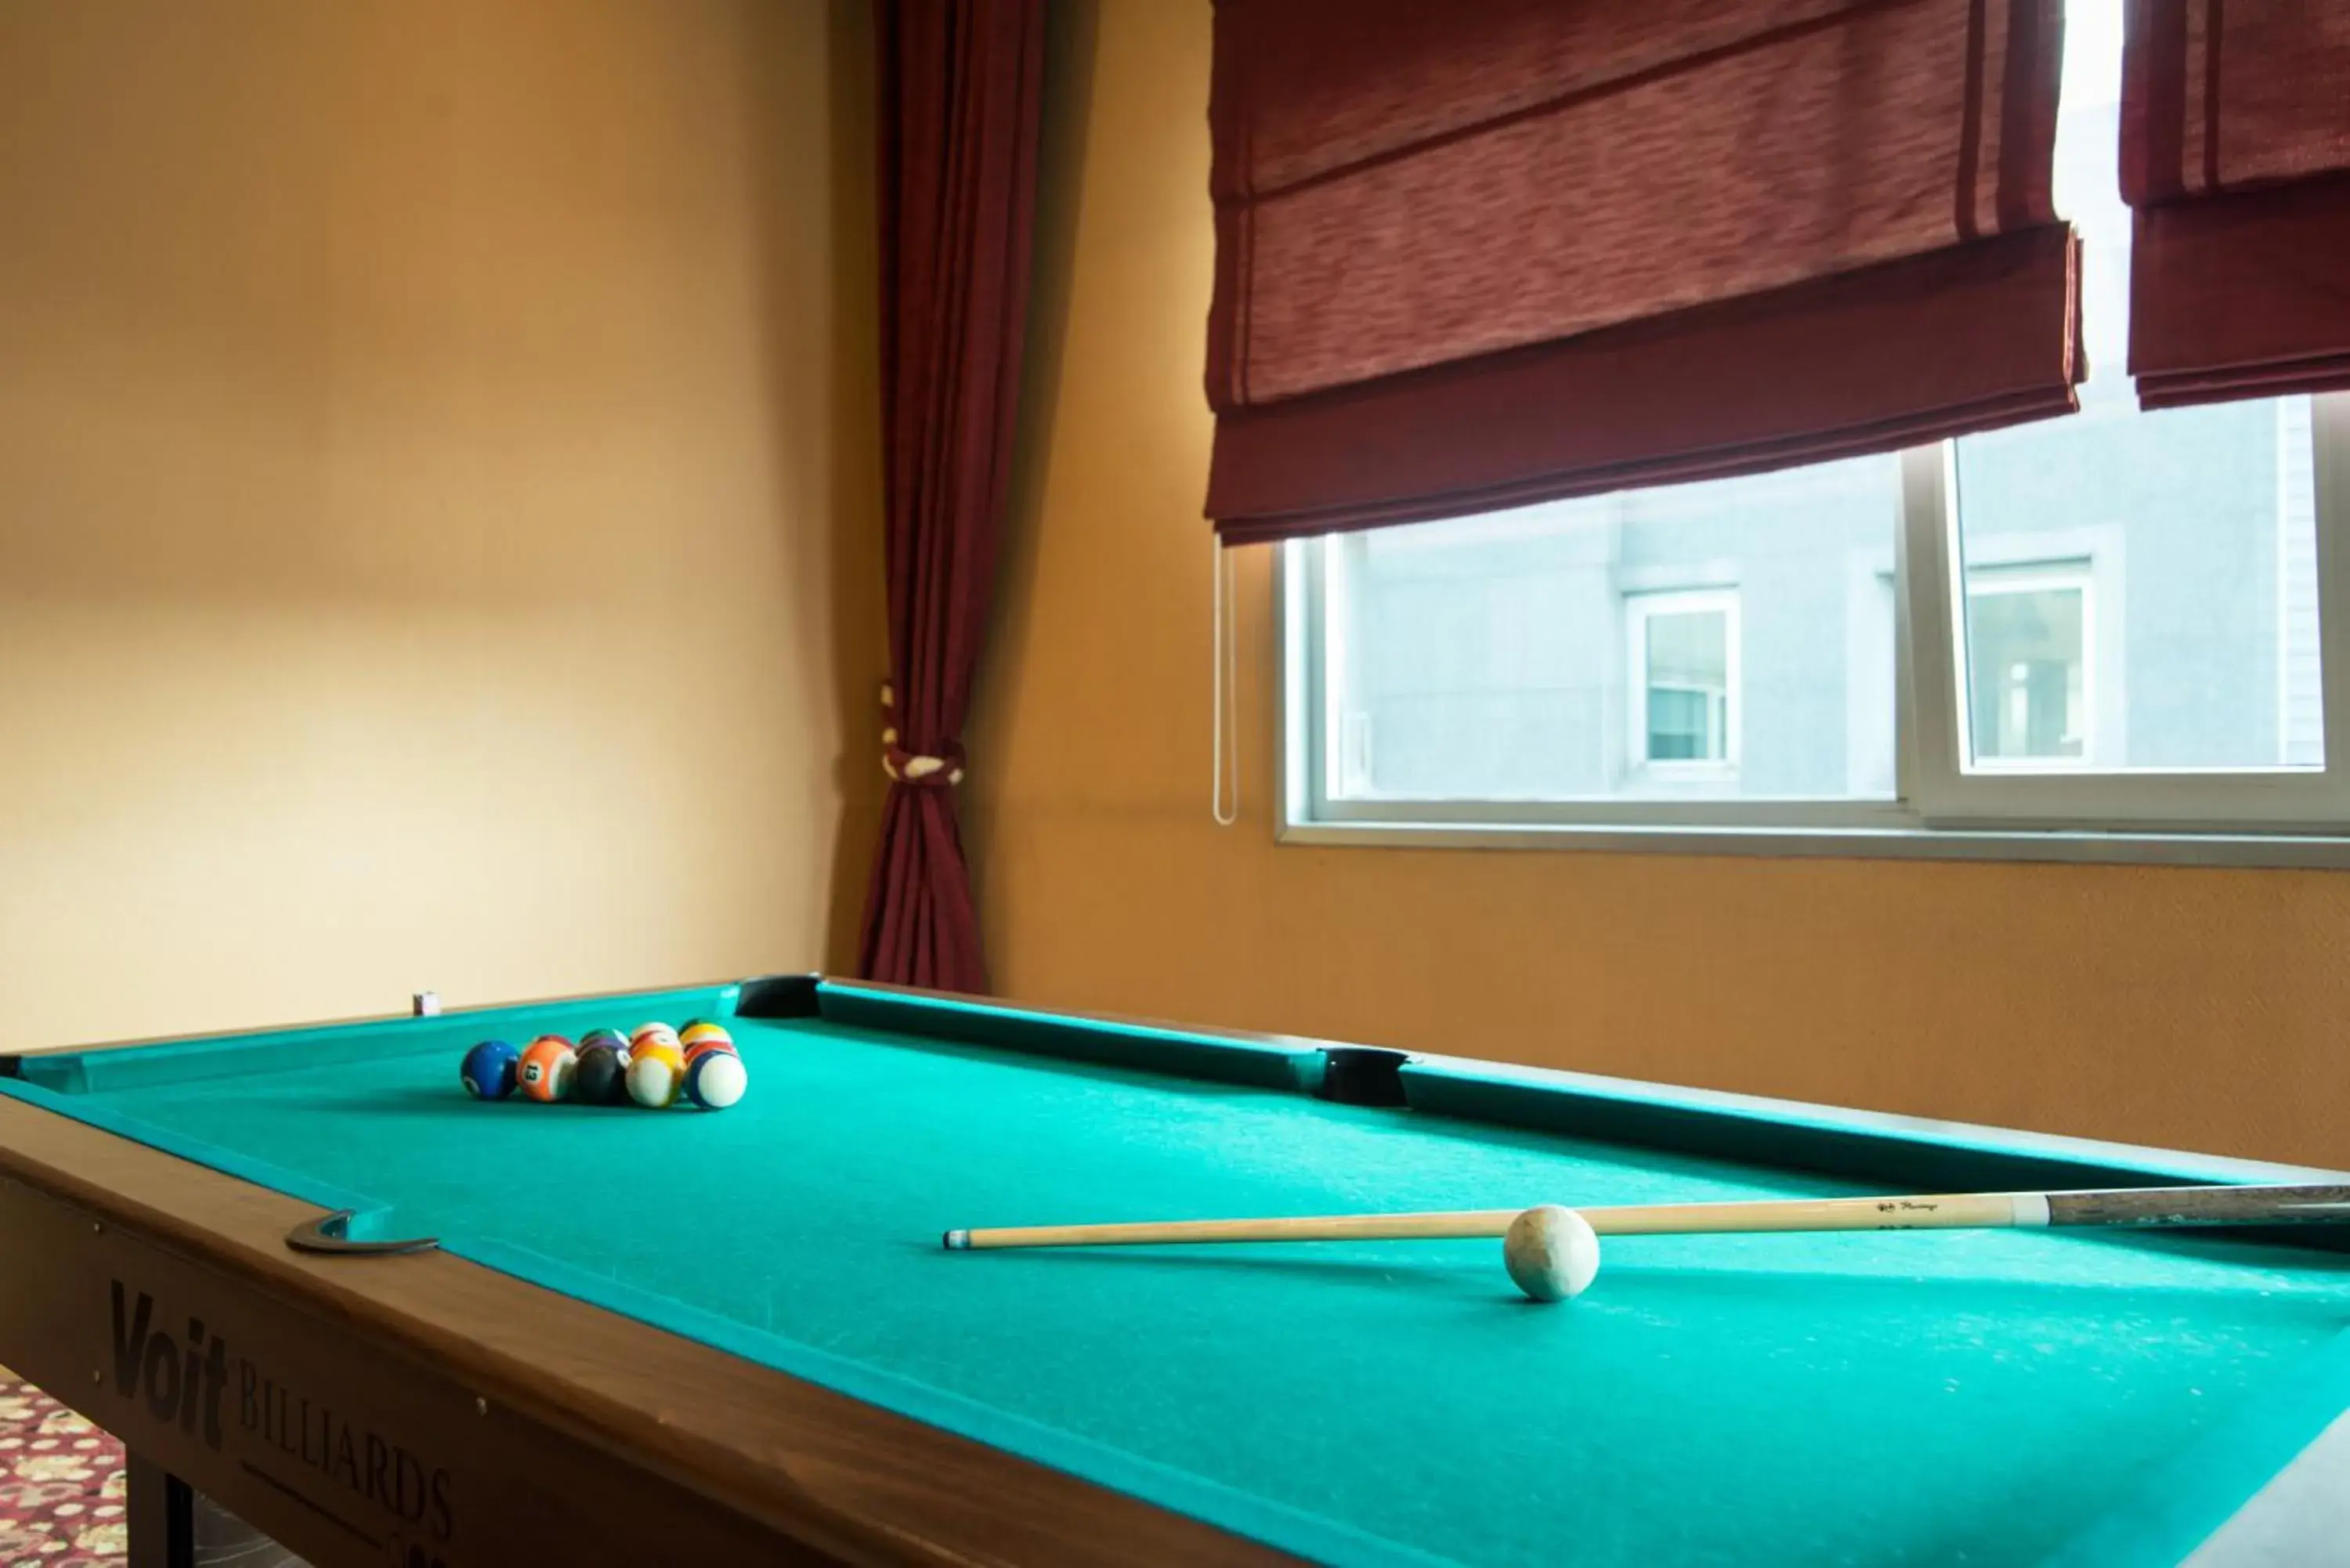 Game Room, Billiards in Dila Hotel